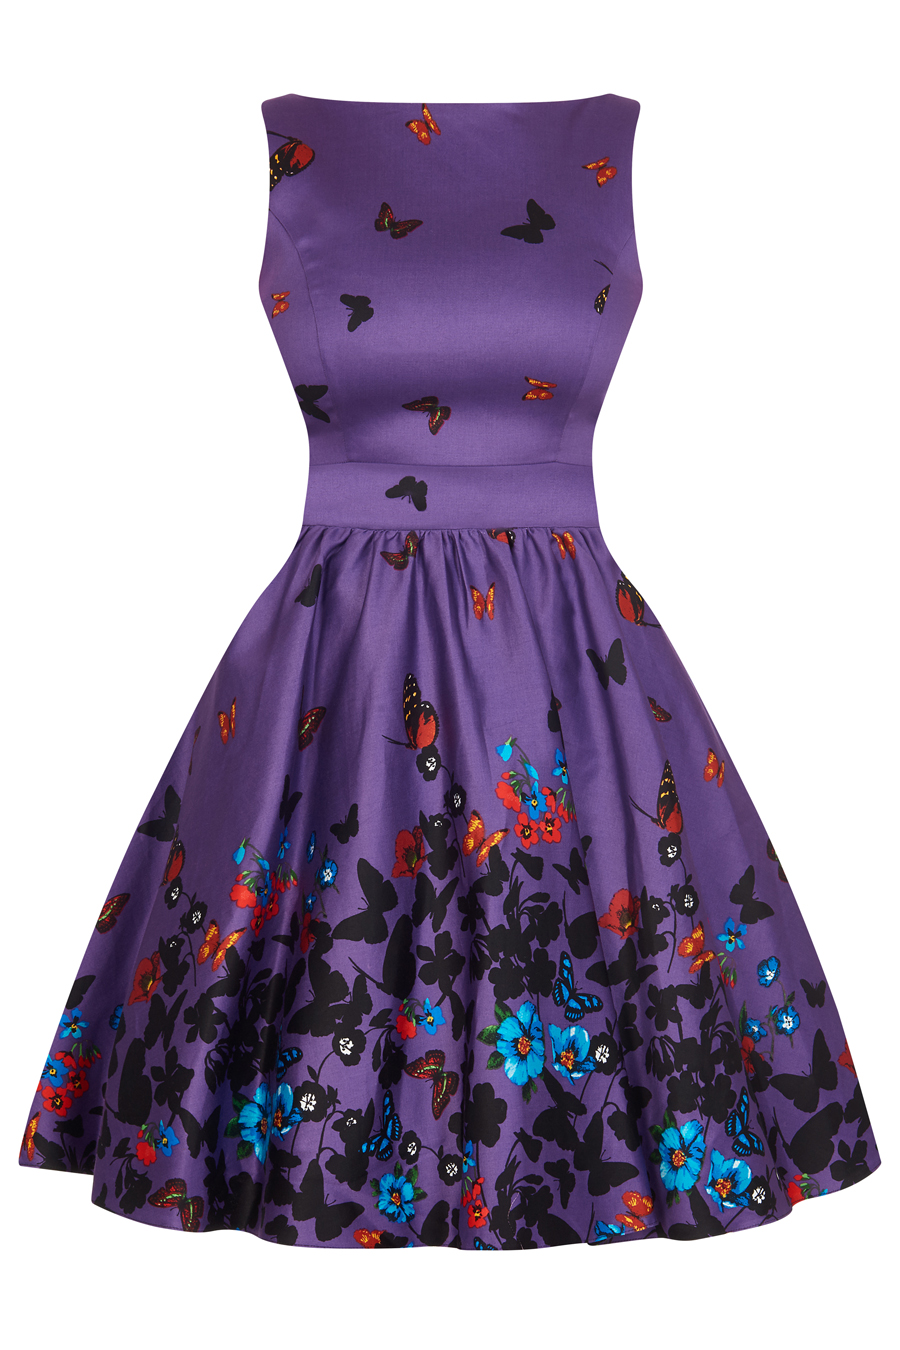 RKL27 Lady Vintage London Purple Butterfly Tea Dress Swing Retro Rockabilly